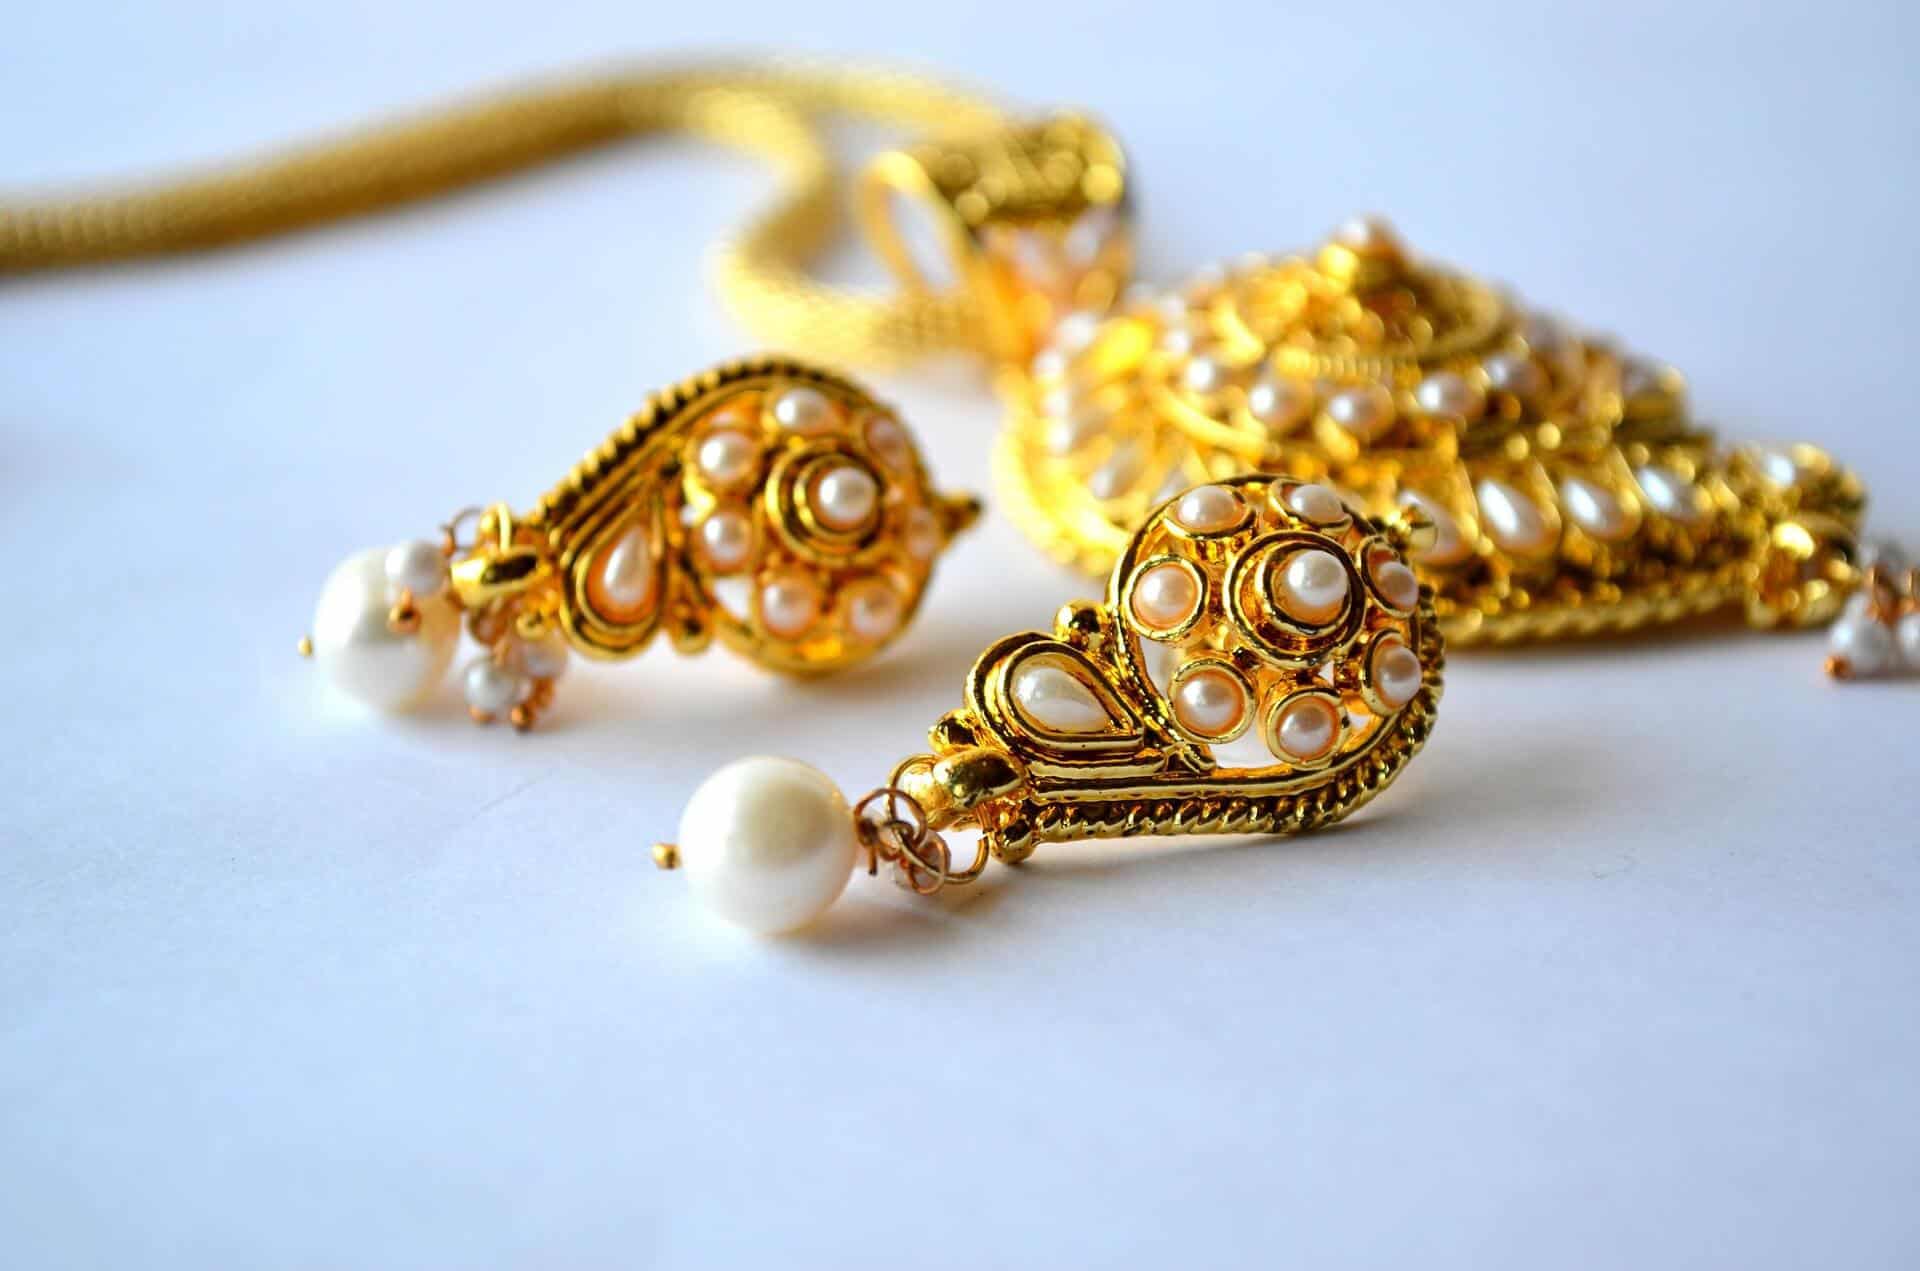 Stone earrings in gold